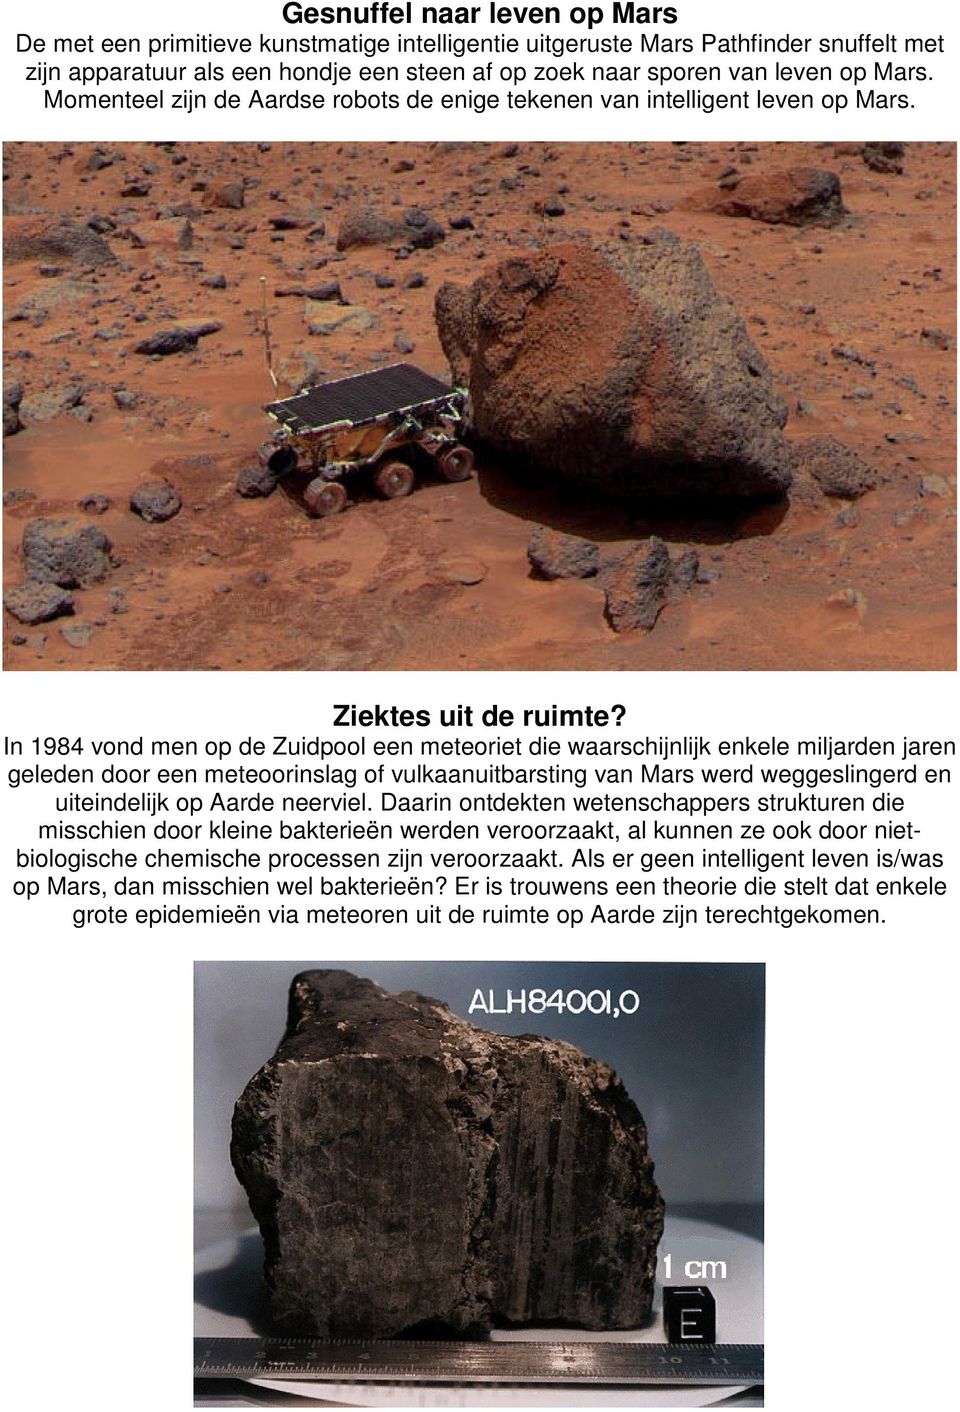 In 1984 vond men op de Zuidpool een meteoriet die waarschijnlijk enkele miljarden jaren geleden door een meteoorinslag of vulkaanuitbarsting van Mars werd weggeslingerd en uiteindelijk op Aarde